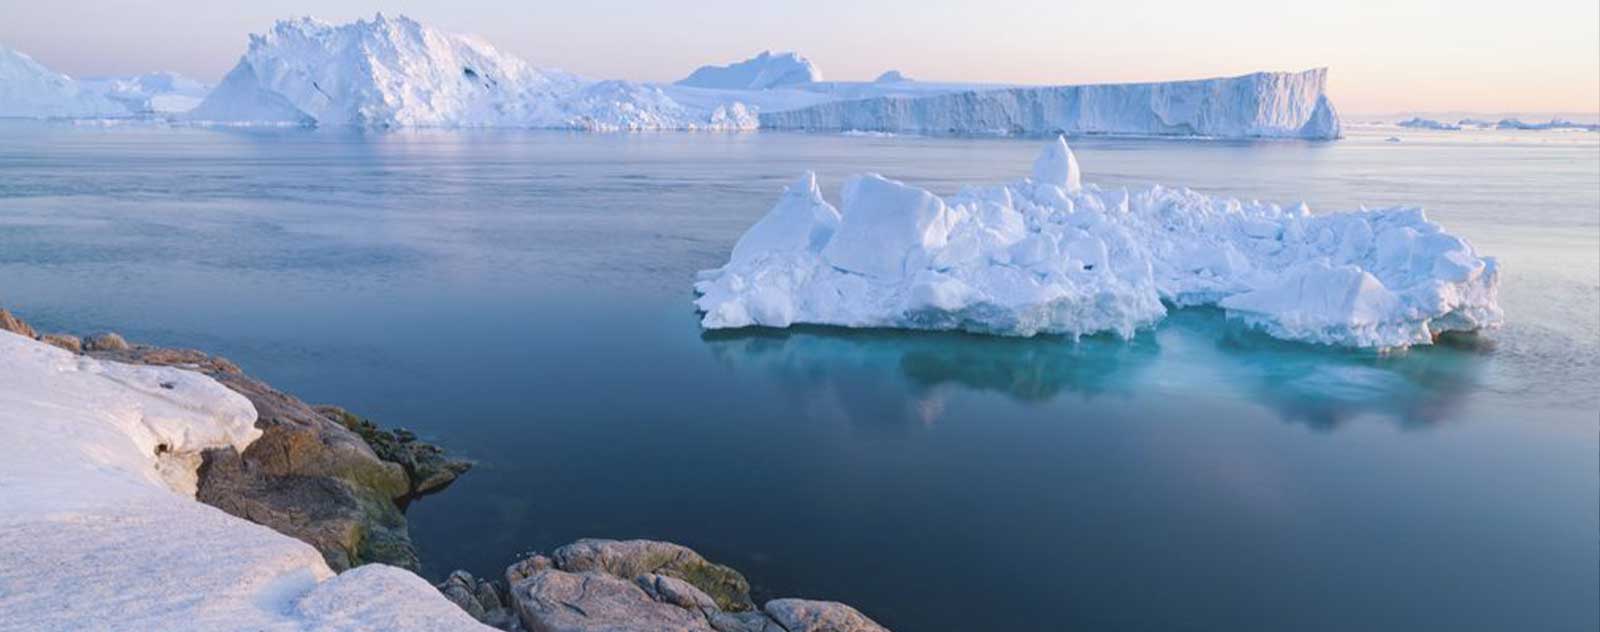 Groenland découverte